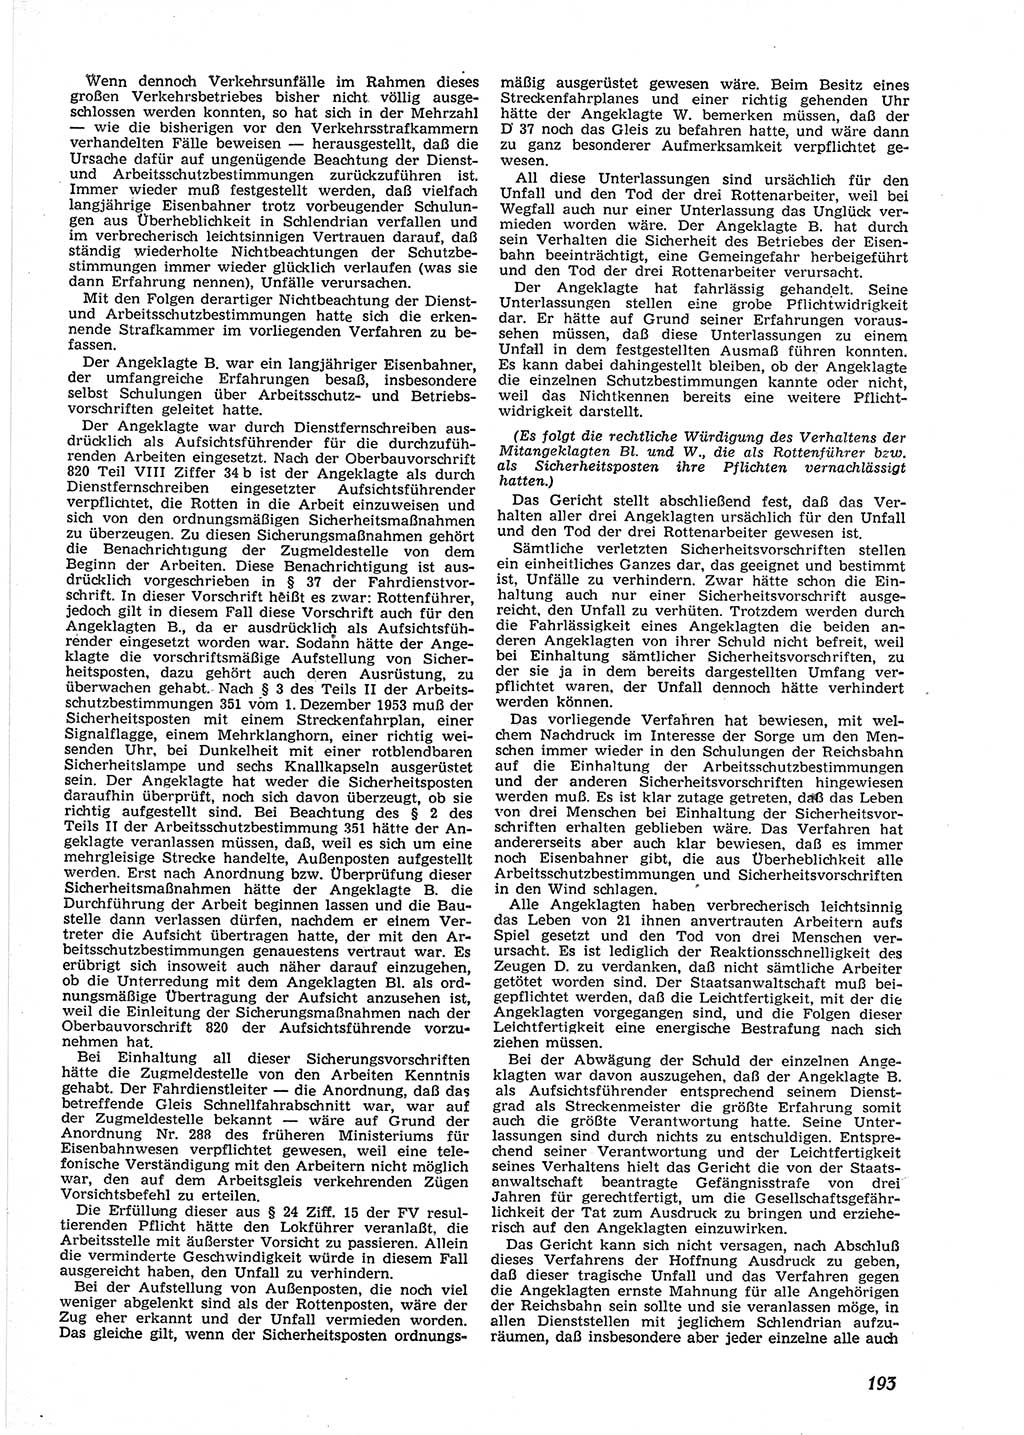 Neue Justiz (NJ), Zeitschrift für Recht und Rechtswissenschaft [Deutsche Demokratische Republik (DDR)], 9. Jahrgang 1955, Seite 193 (NJ DDR 1955, S. 193)